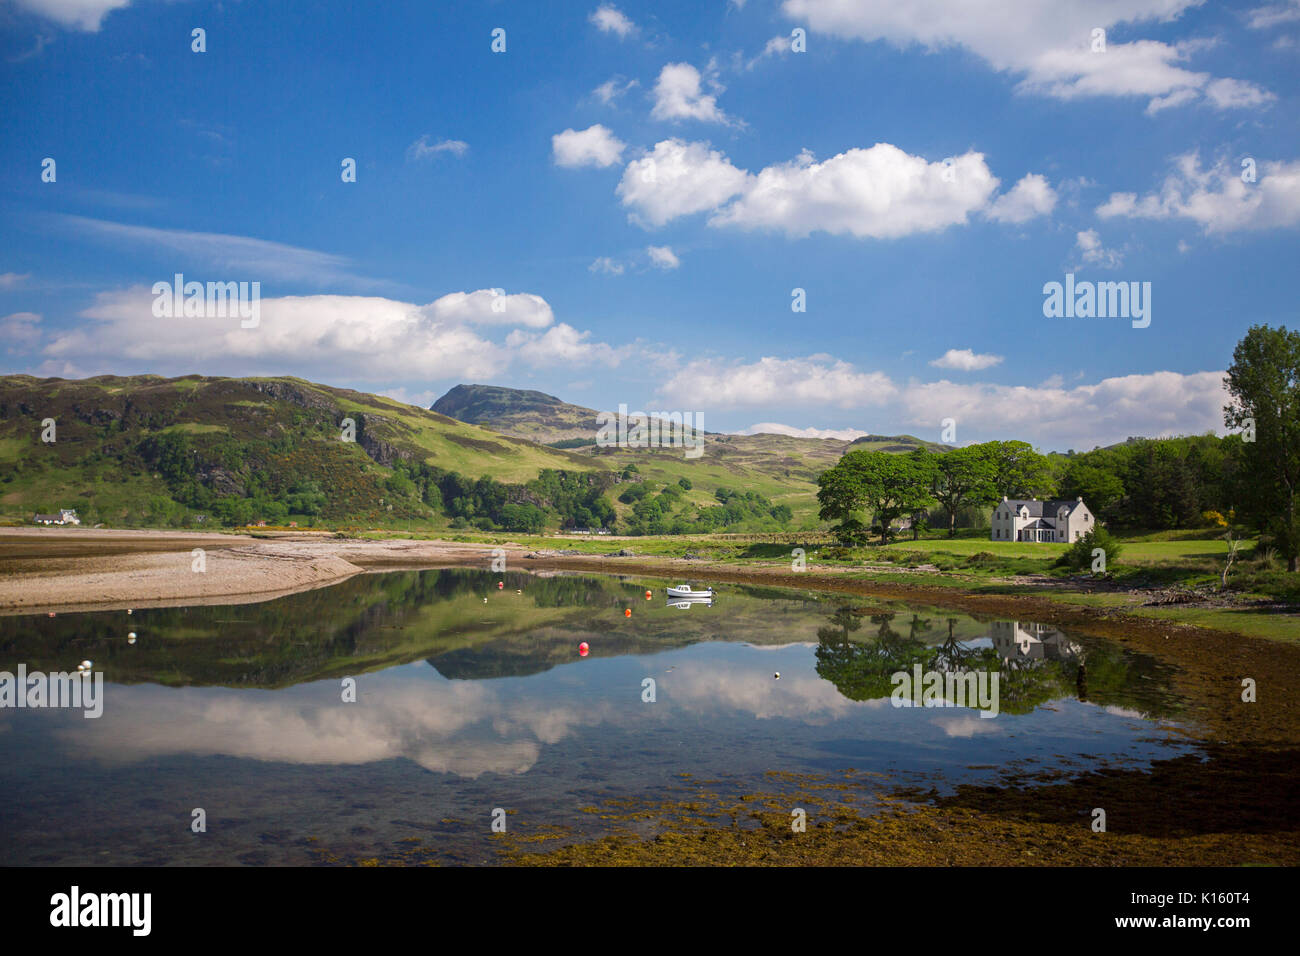 Lo straordinario paesaggio con montagne, cielo blu, & white house si riflette nelle tranquille acque del lago e spiaggia di sabbia orlate da alberi vicino a Glenelg maggiori informazioni in inglese in Scozia Foto Stock